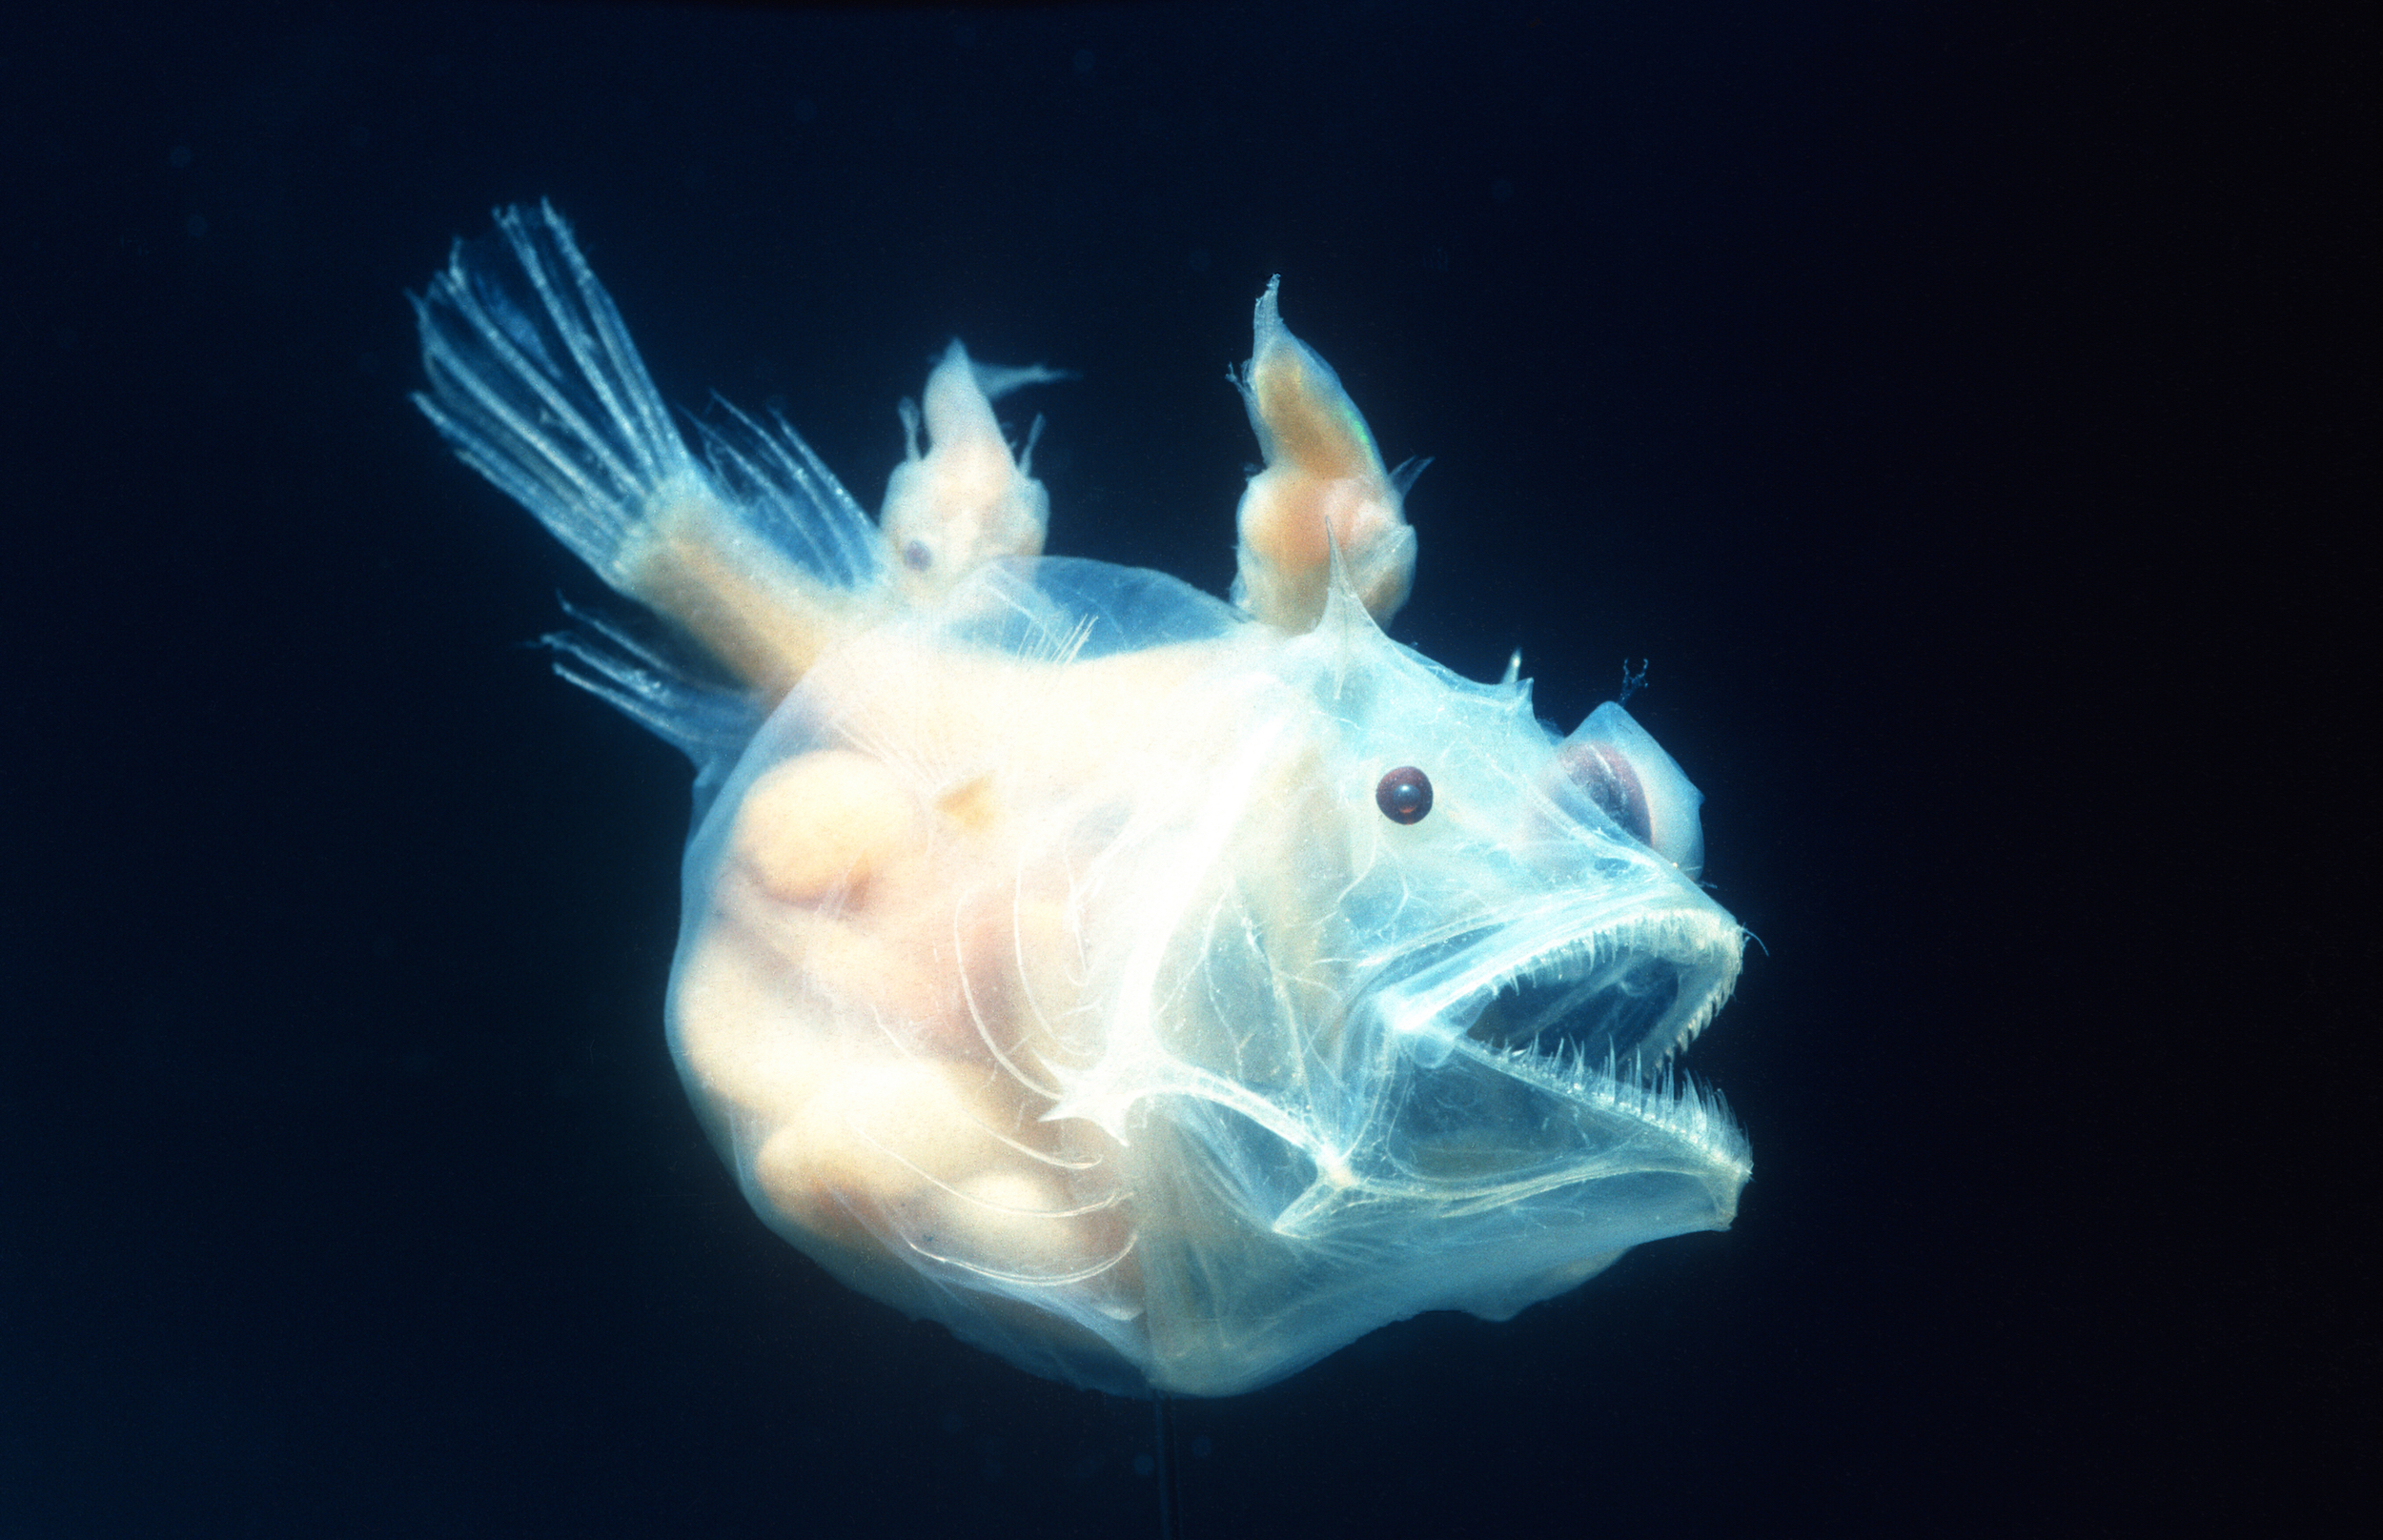 Không chỉ cách săn mồi, mà ngay cả hành vi giao phối của cá Anglerfish được miêu tả khá kỳ quái